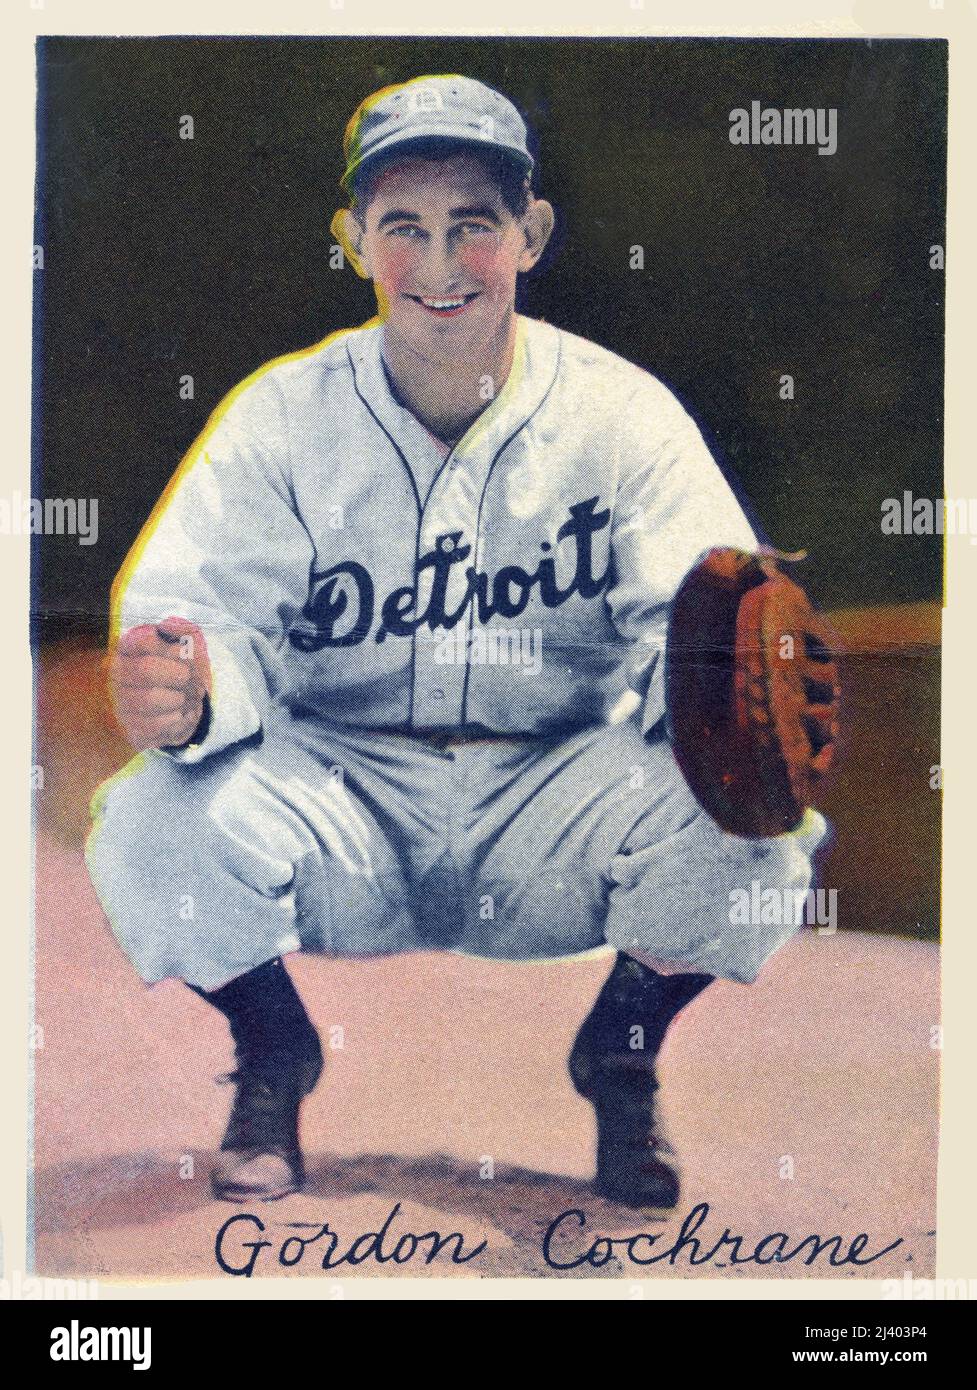 Foto ricordo colorata a mano del catcher Gordon 'mickey' Cochran con le Detroit Tigers. Foto Stock